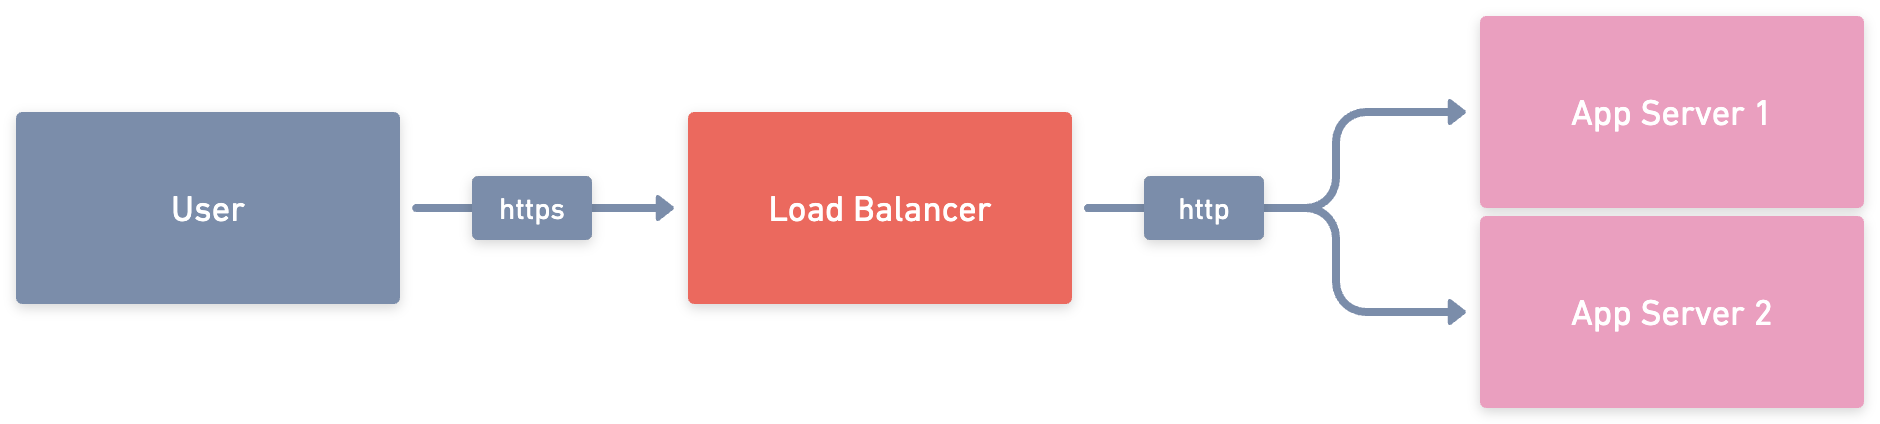 Точка входа указывает на балансировщик, распределяющий входящие запросы между серверами